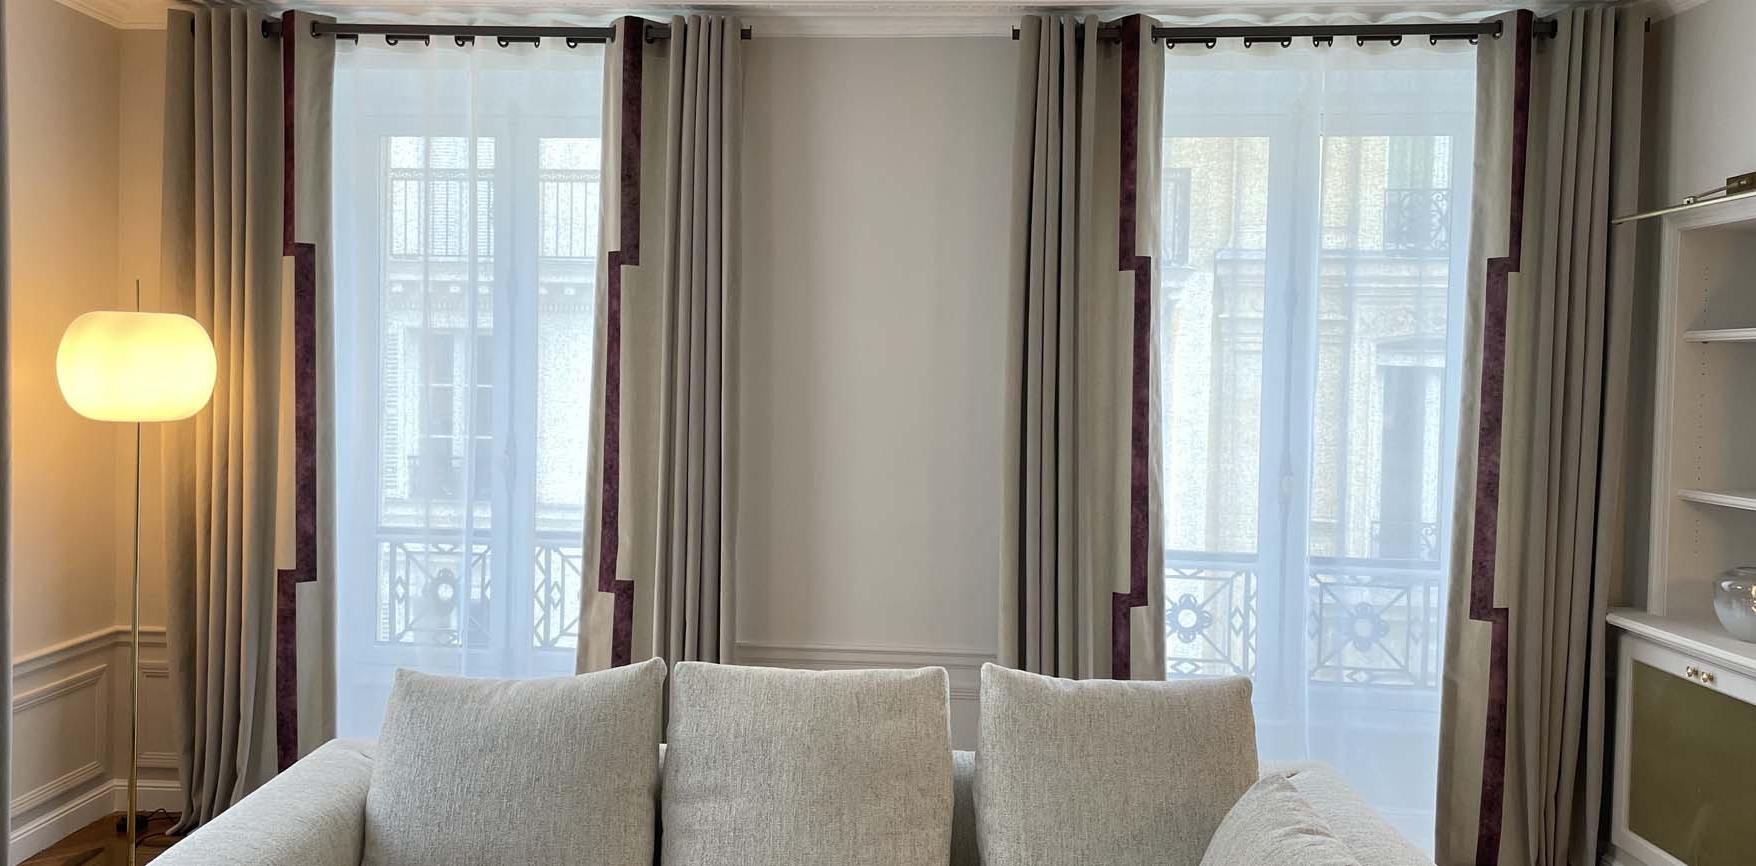 Dans ce bel appartement : rideaux en velours et voilages en lin sur tringles plates.